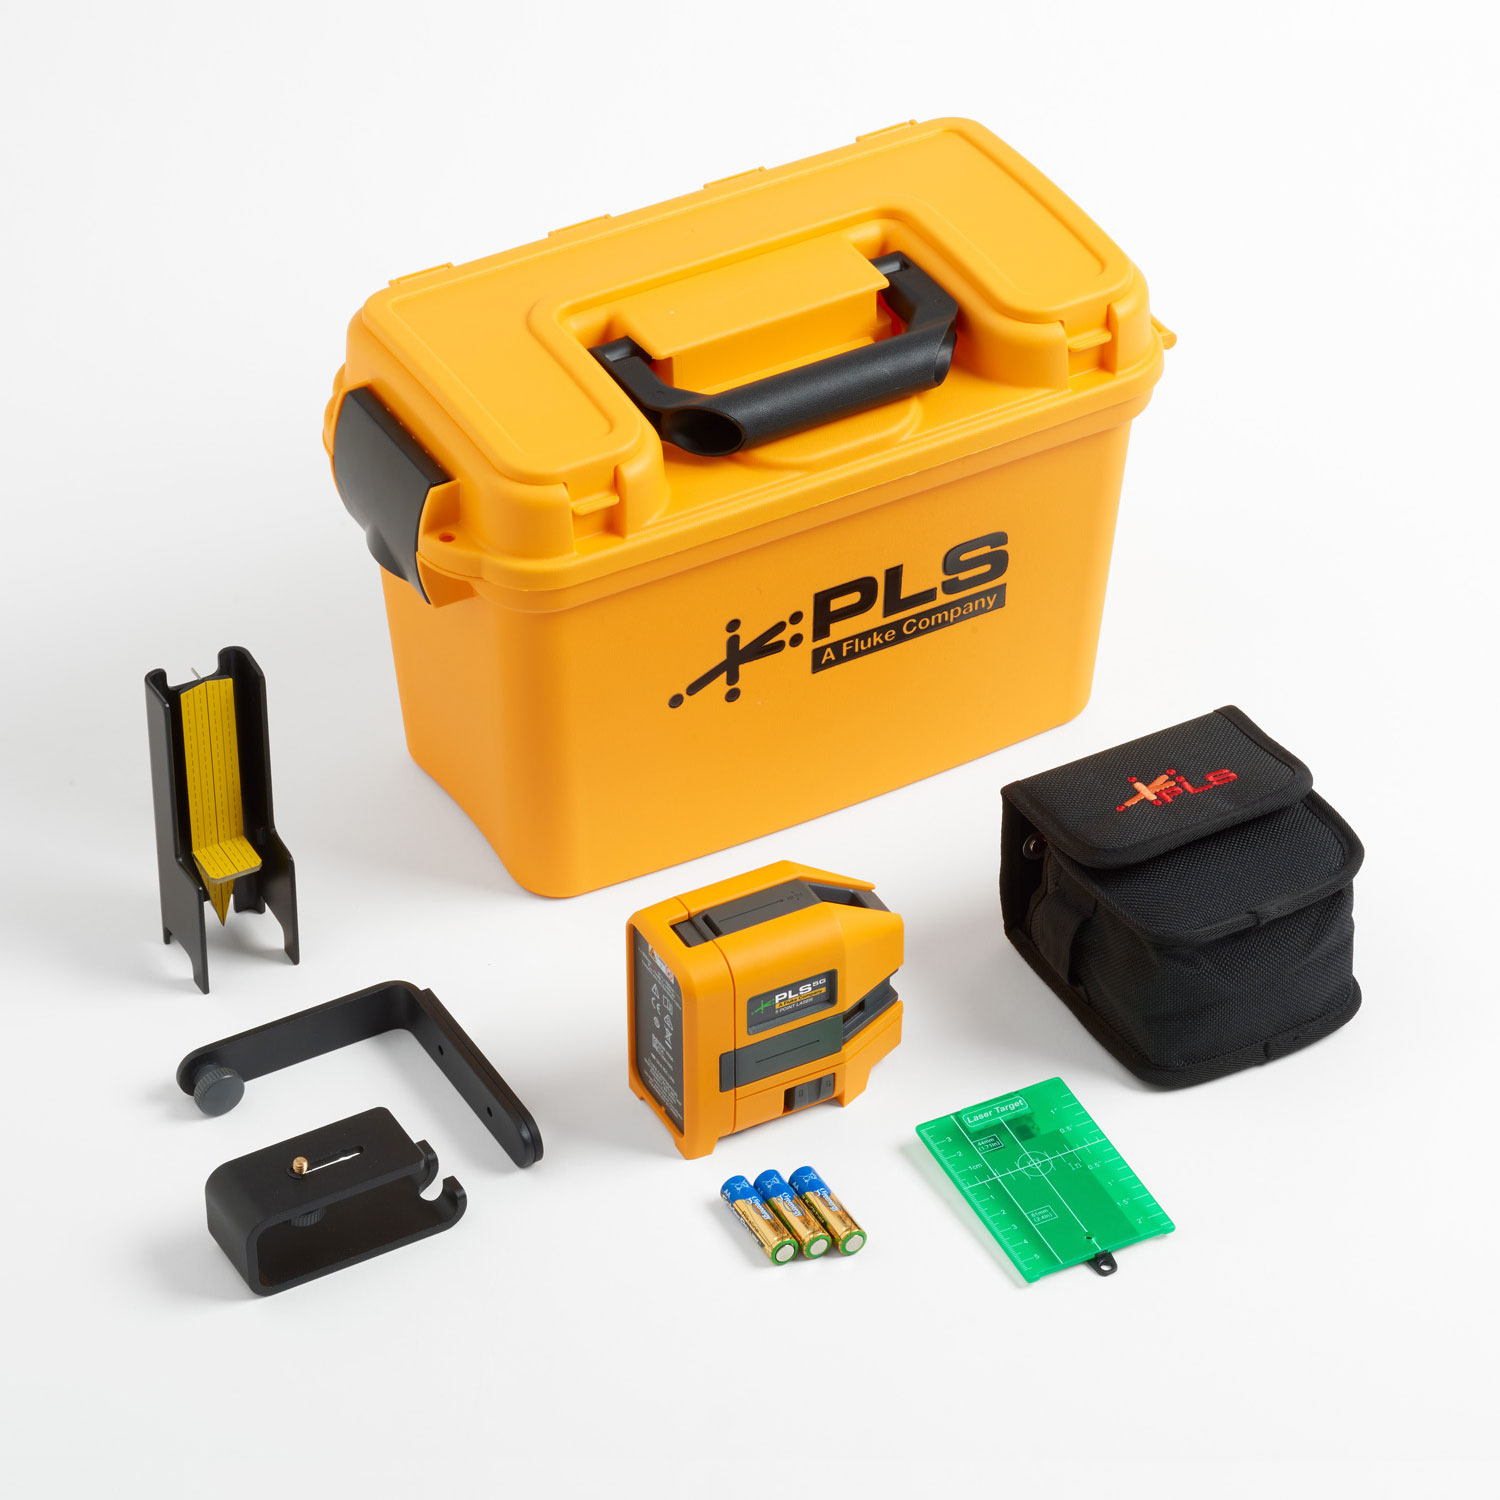 PLS 5G - 5 Point Laser Kit